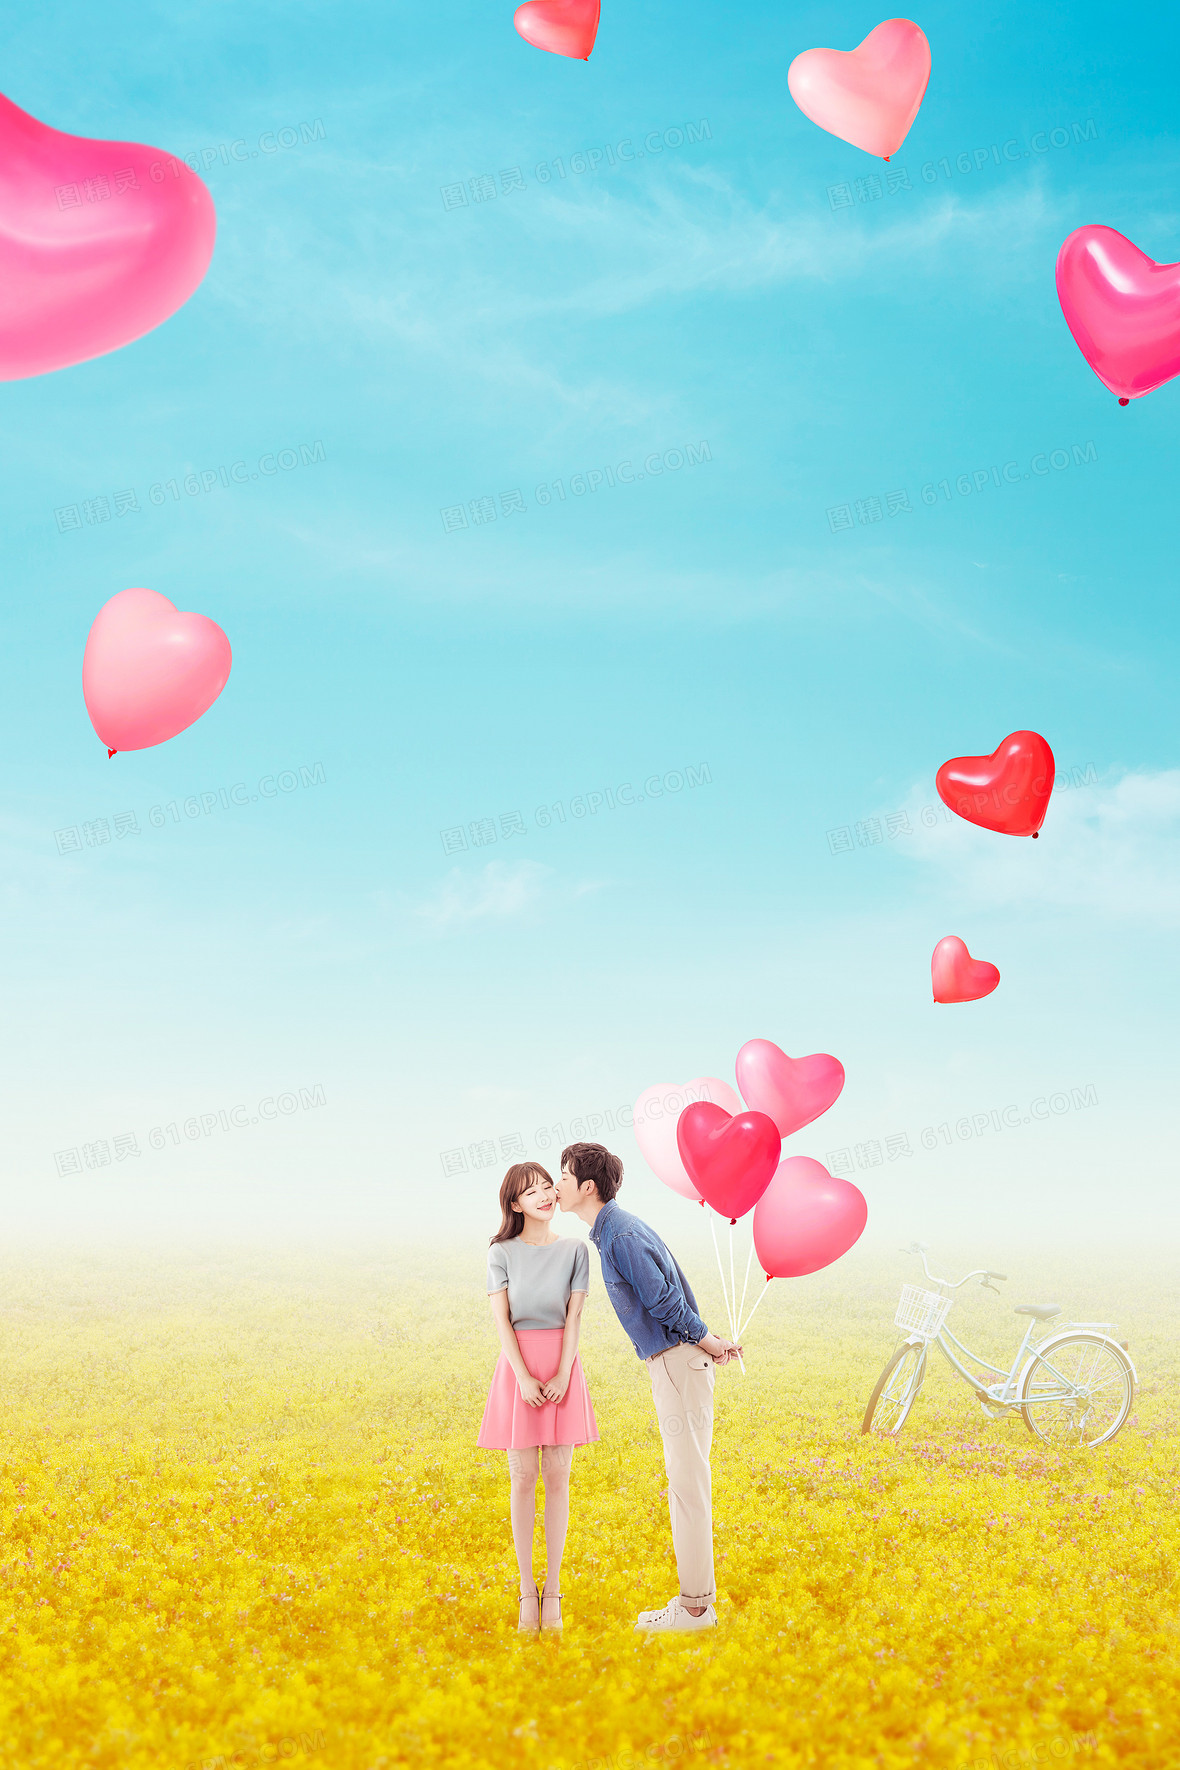 关键词:              情人节情侣气球浪漫浪漫背景温馨爱心